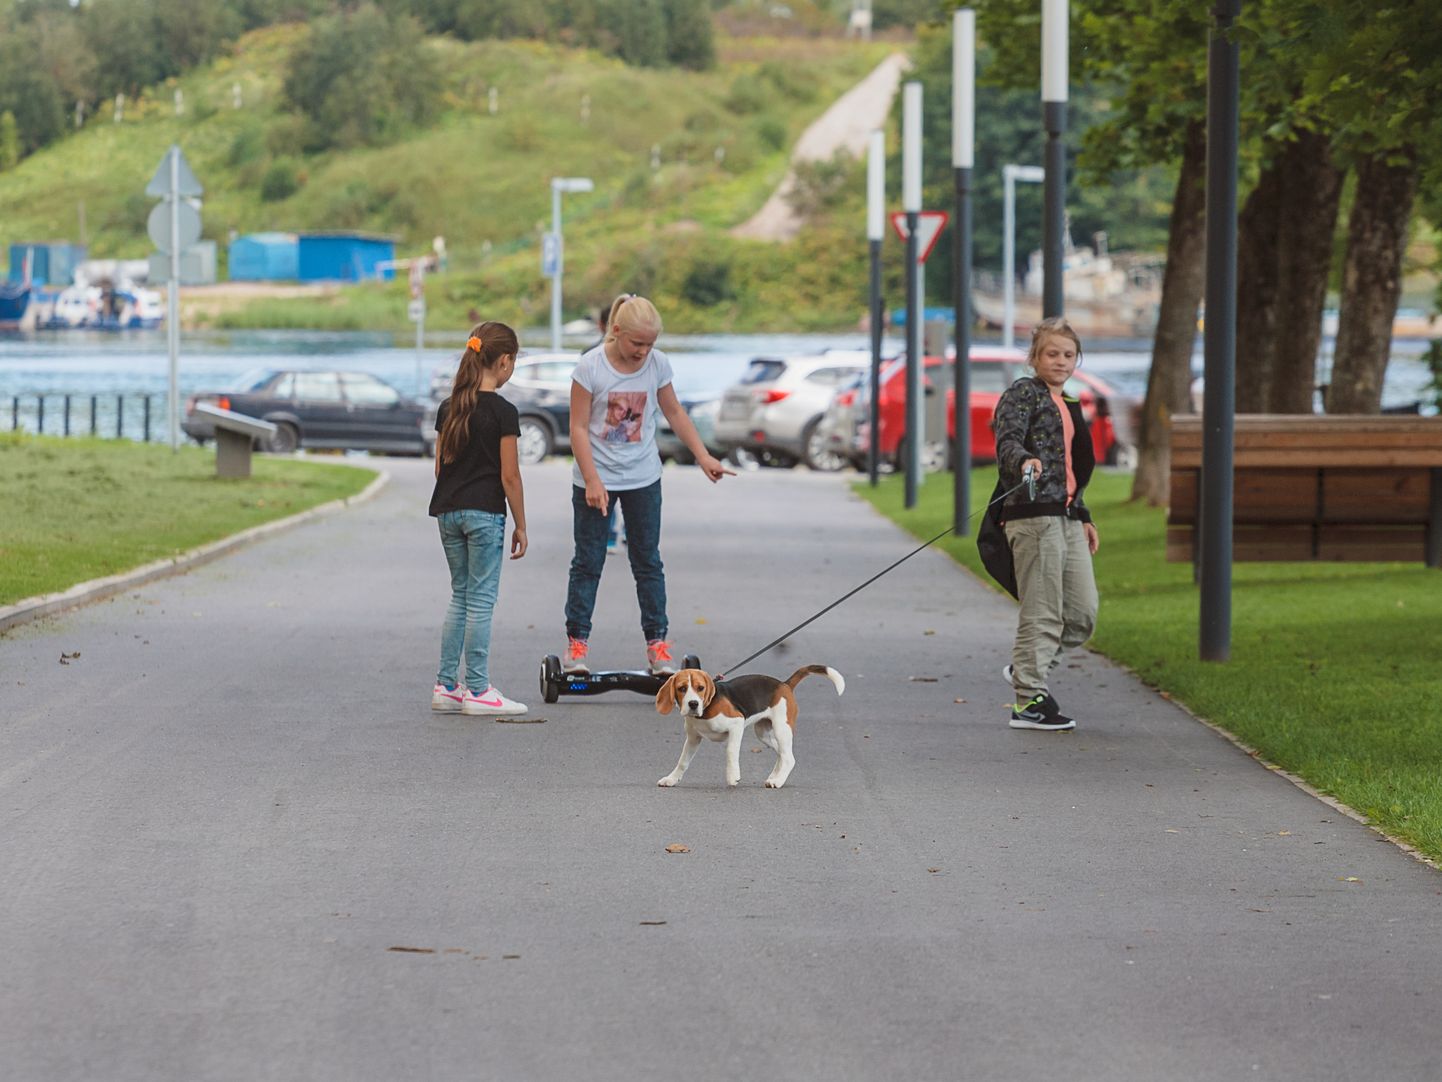 Koeraga jalutamisel näiteks Narva promenaadil tuleb edaspidi järgida uusi, muu hulgas jalutusrihma pikkust puudutavaid nõudeid.